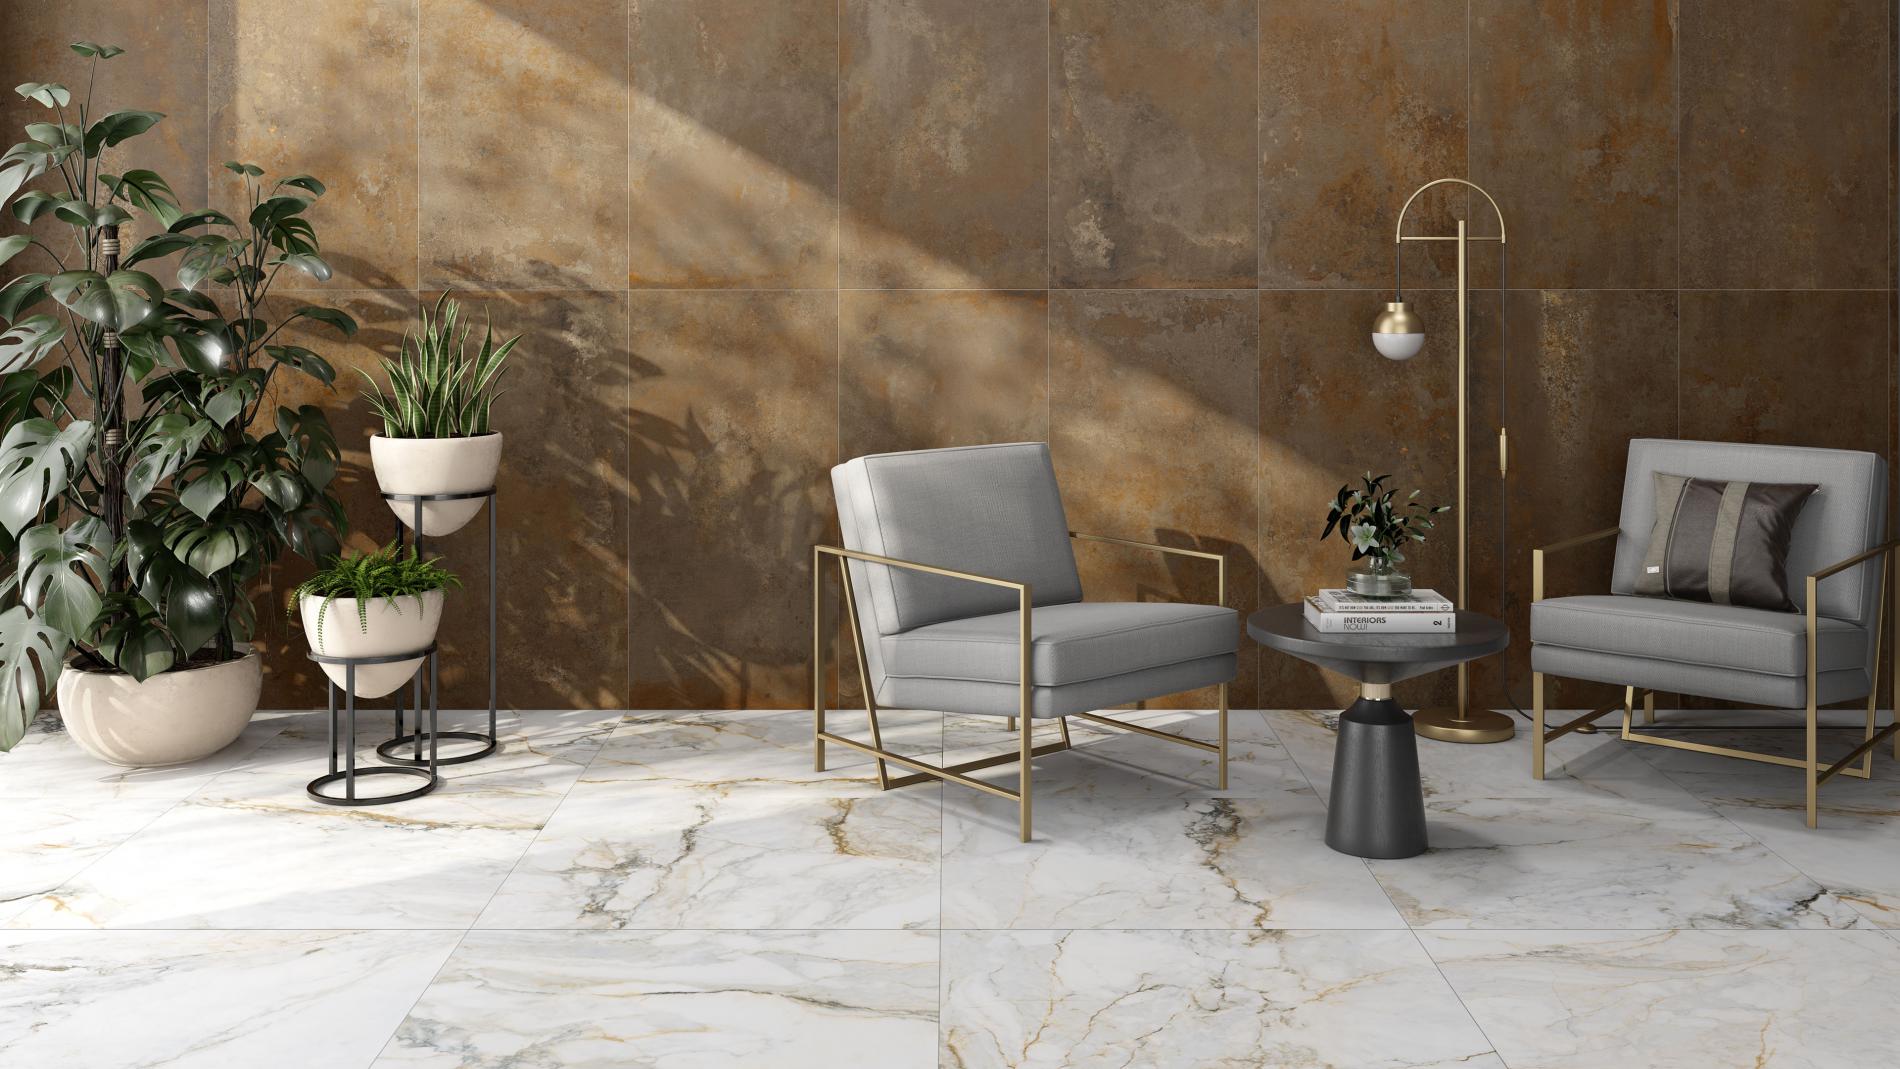 Elegancki pokój z podłogą wyłożoną płytkami imitującymi marmur i ścianą brązowymi płytkami imitującymi metal, z dwoma szarymi fotelami, okrągłym stolikiem, lampą stojącą i roślinami w donicach